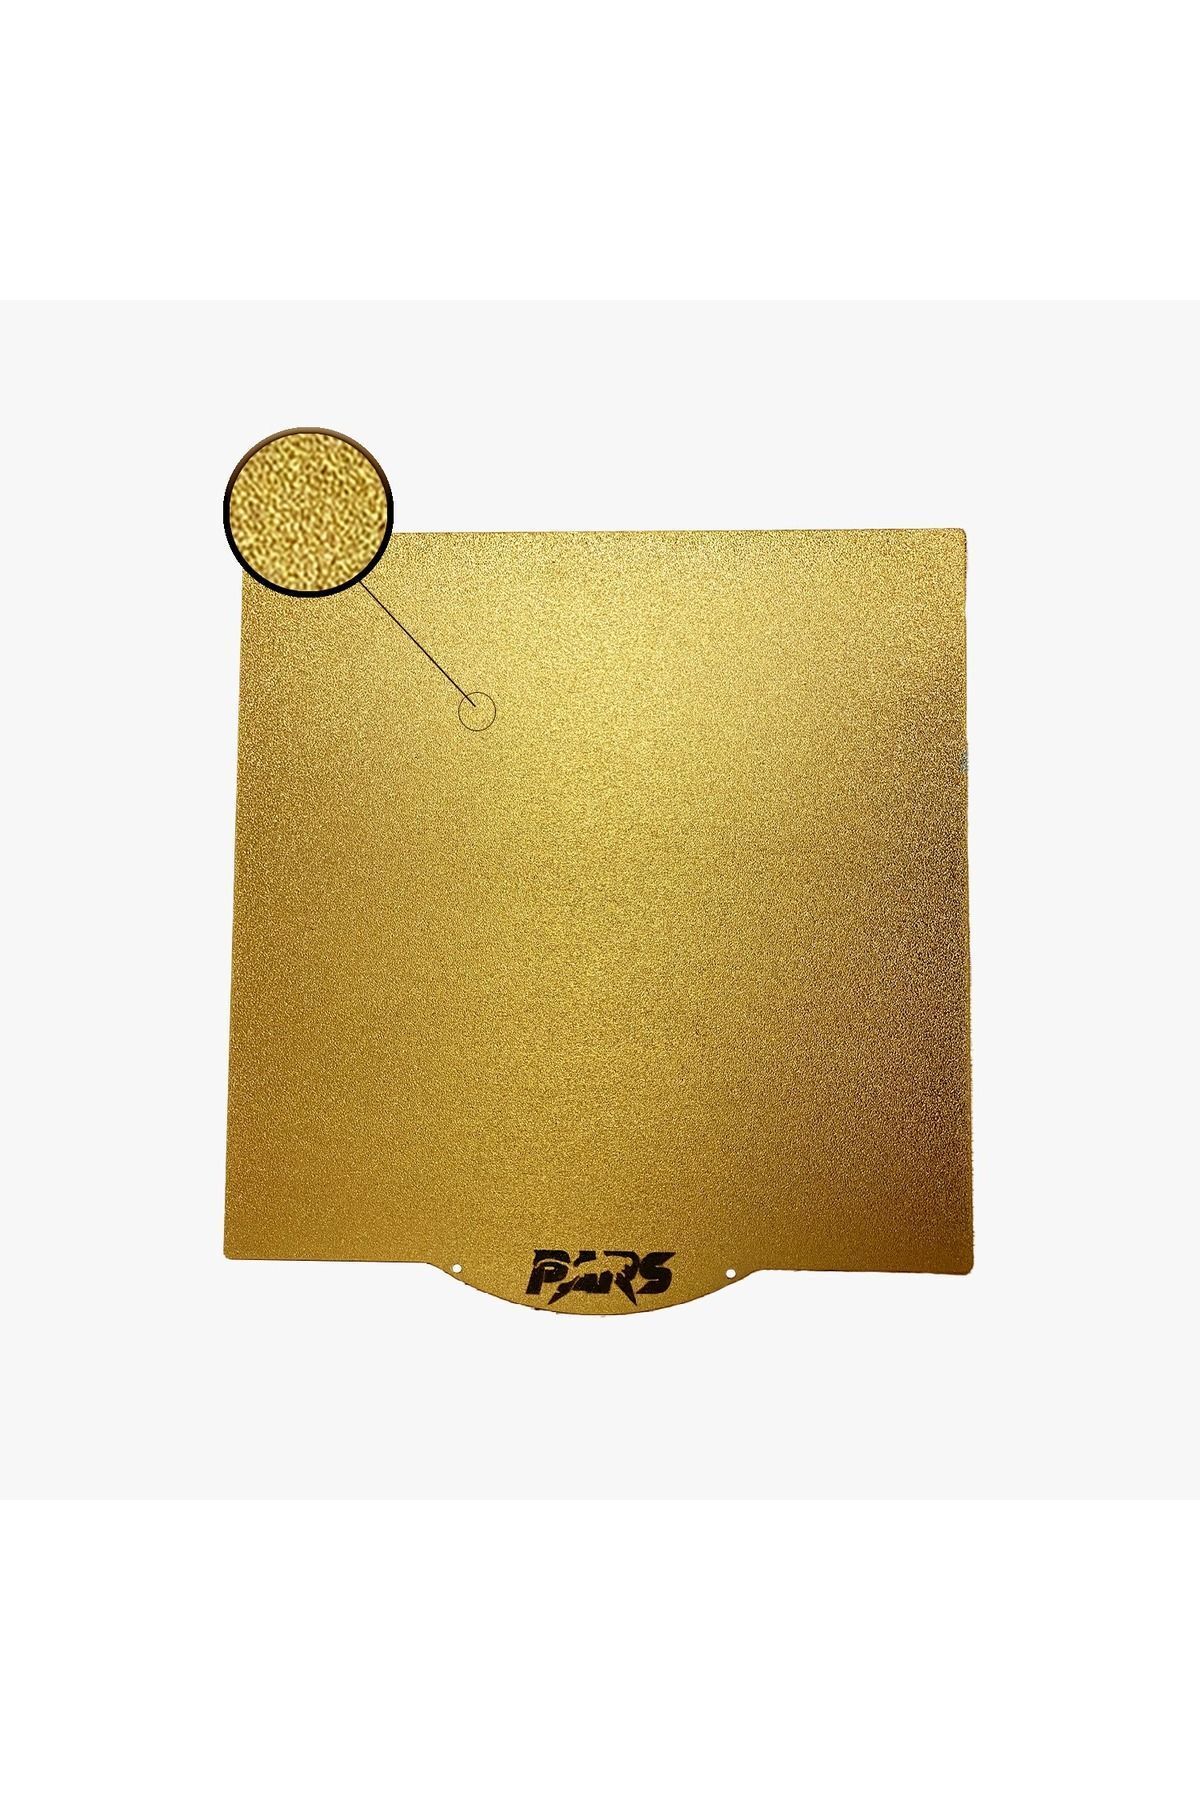 Pars 190x190 MM Pars Gold Pei Kaplı Özel Yay Çeliği Tabla Magnetsiz